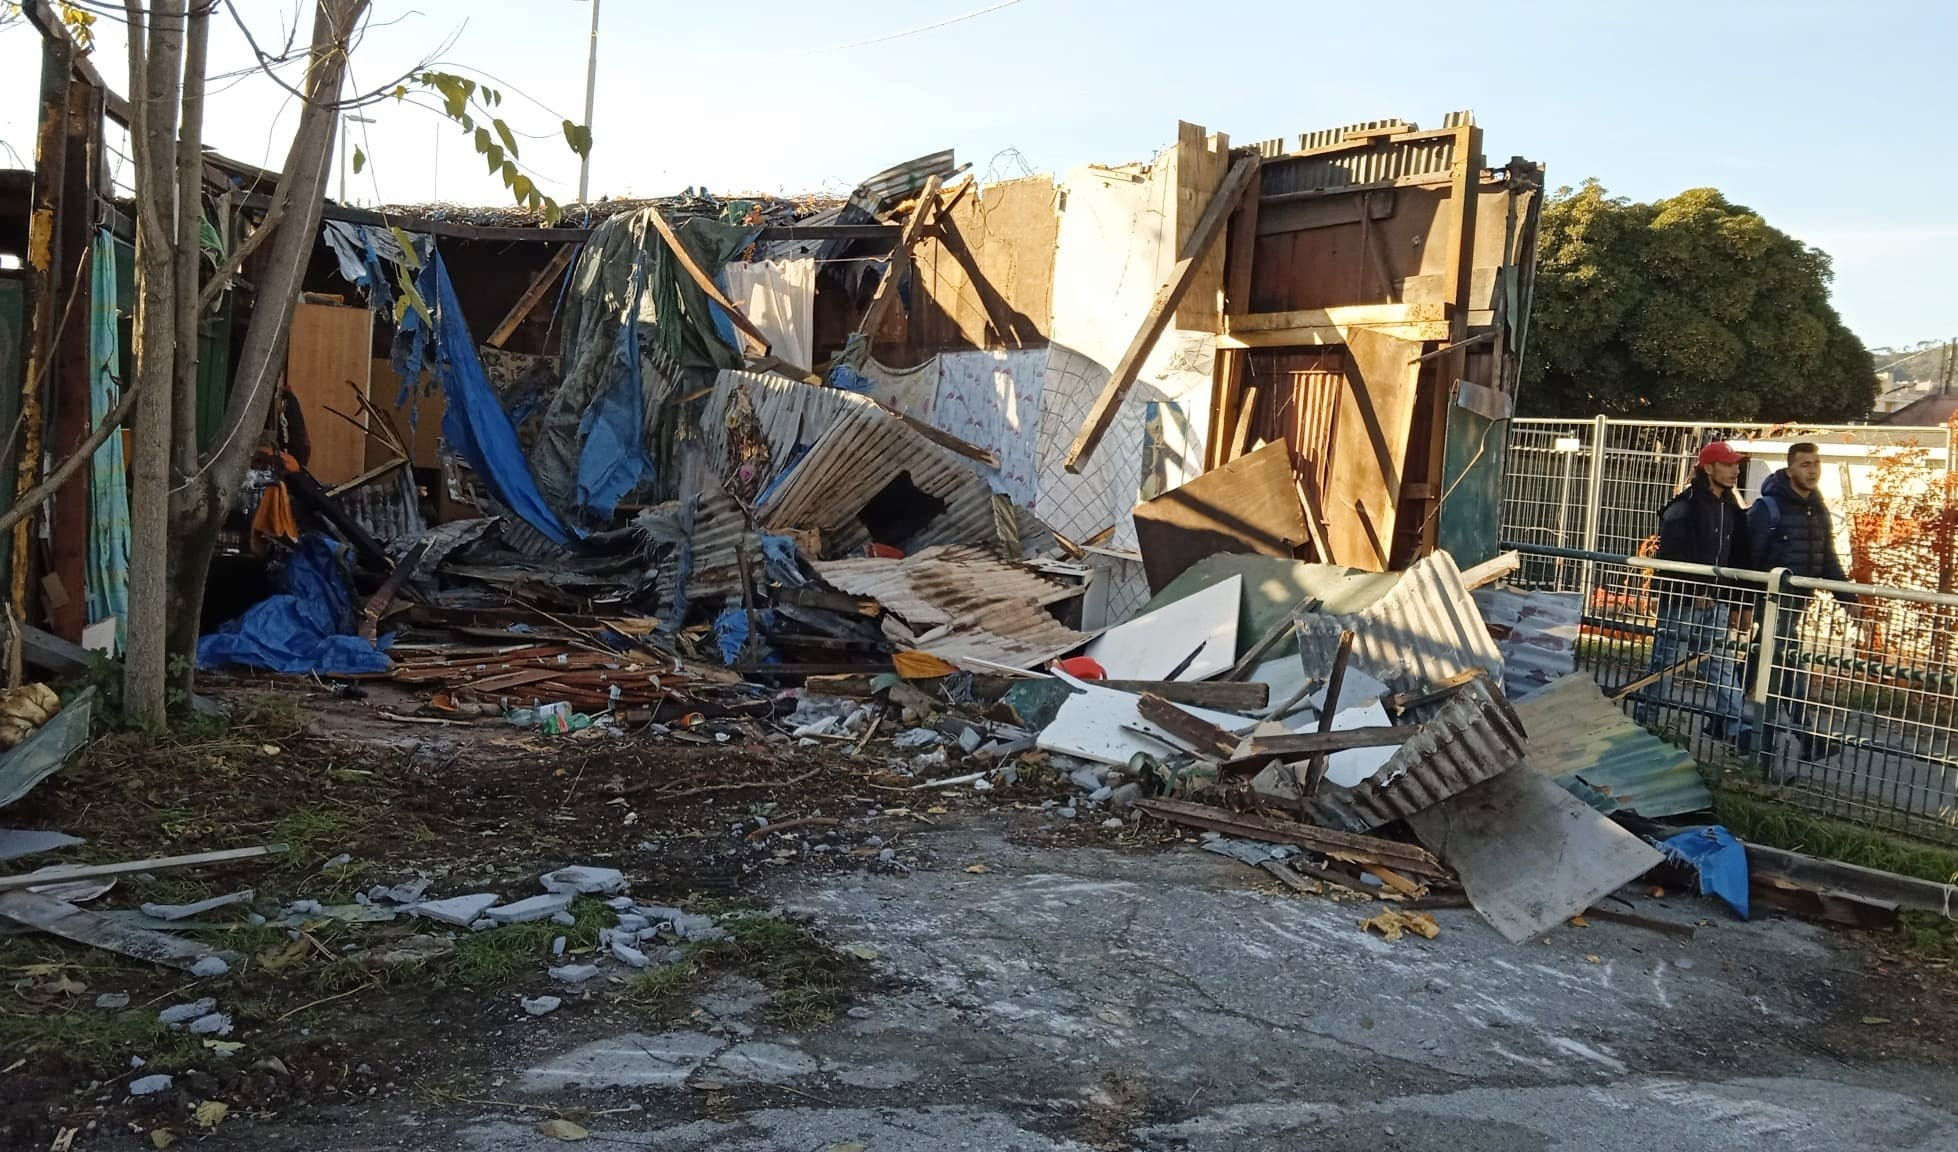 Spiaggia Multedo Genova, demolite cabine-spazzatura: idea nuovi stabilimenti